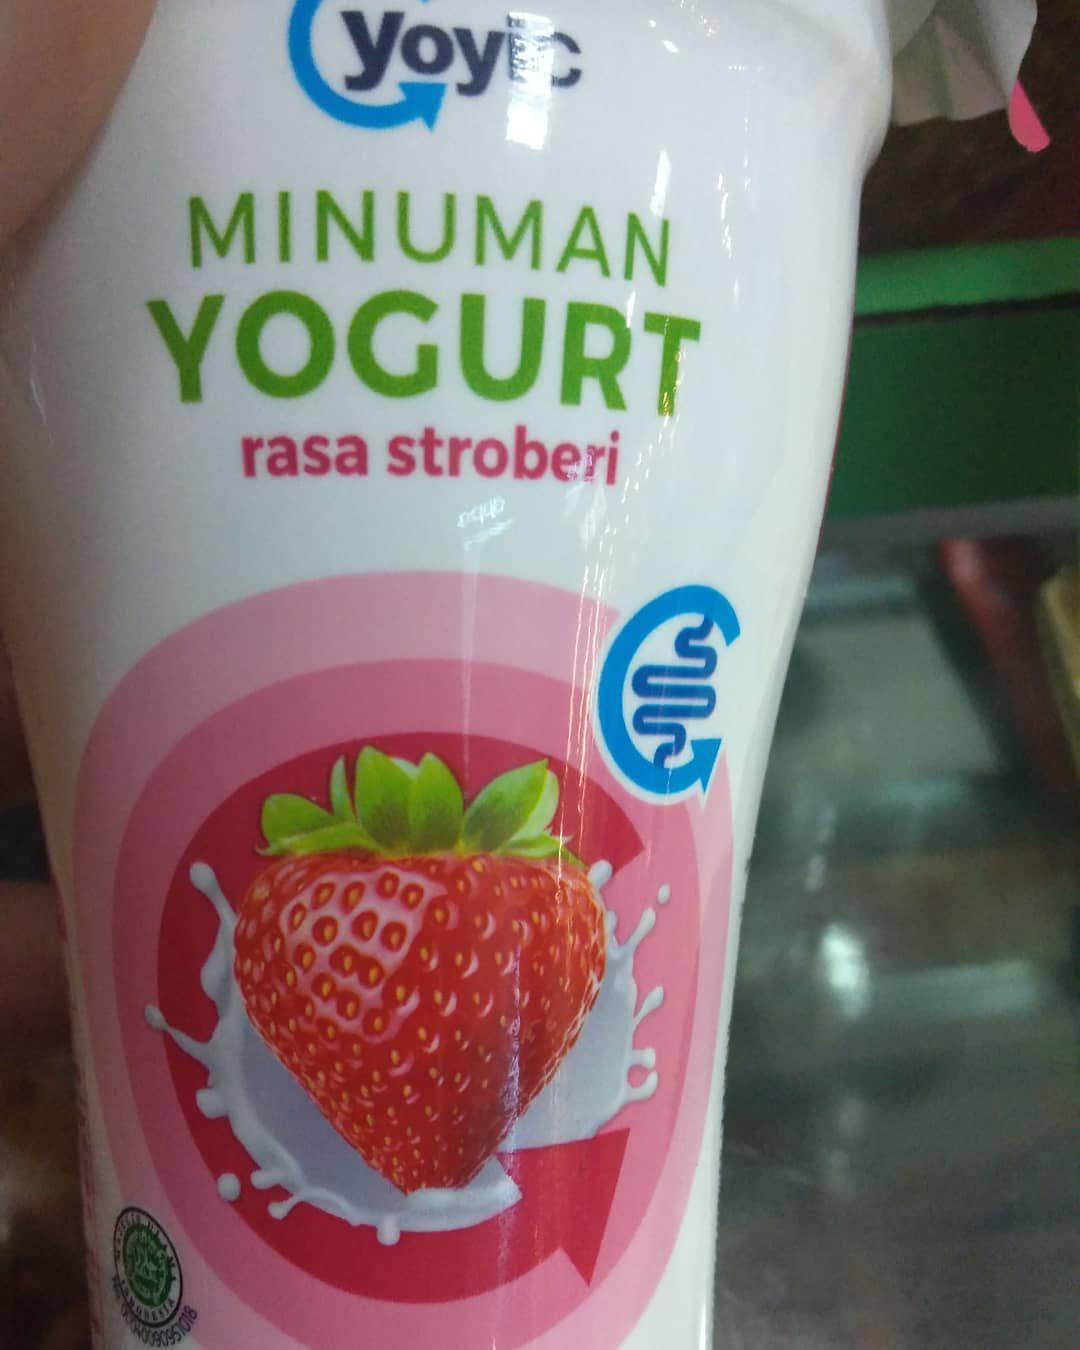 Yoyic Yogurt